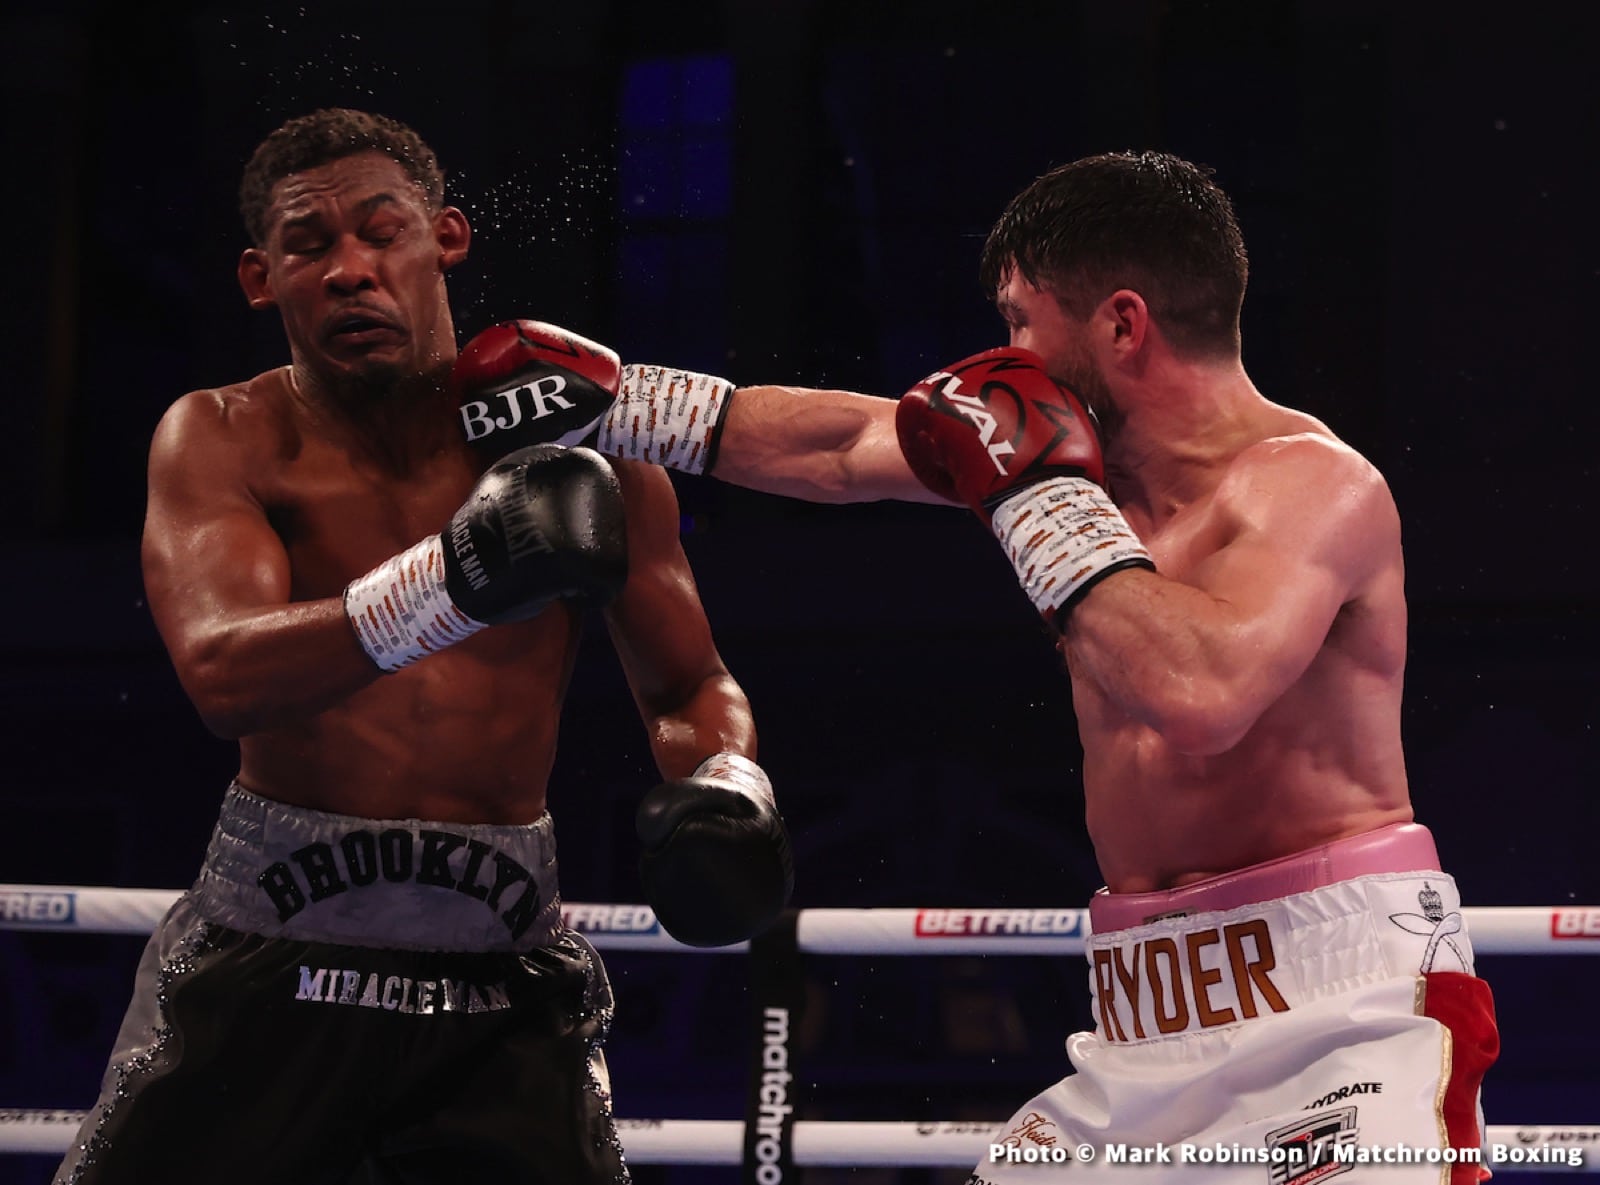 John Ryder boxing image / photo